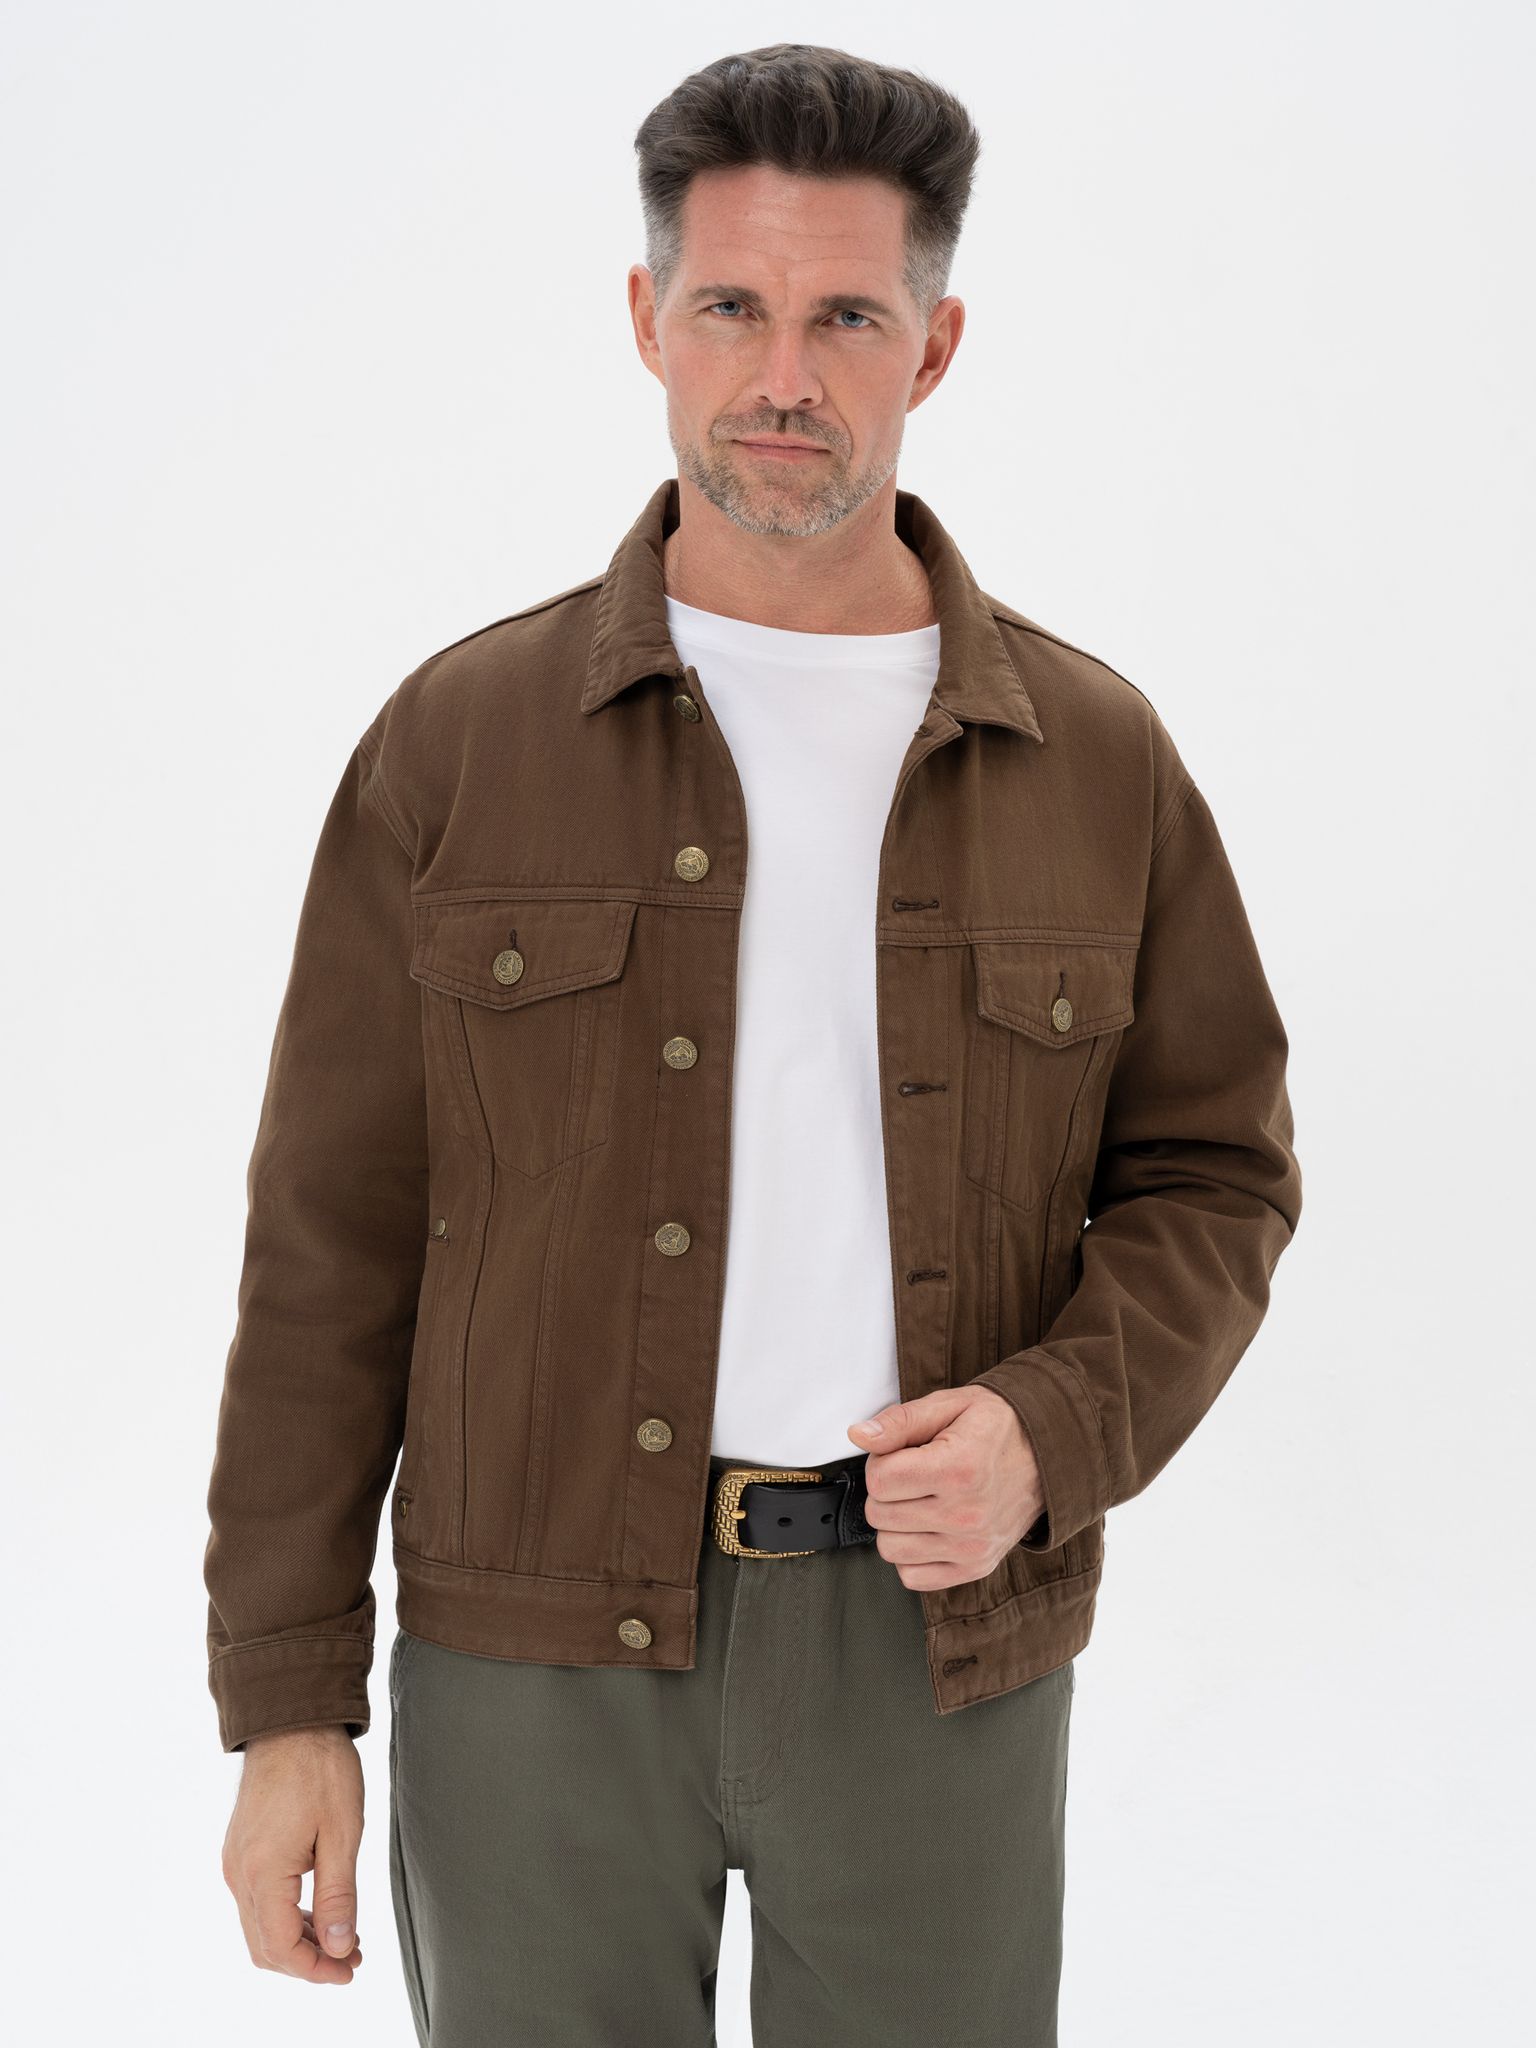 Джинсовая куртка мужская Великоросс JJ коричневая 44/176-186 RU